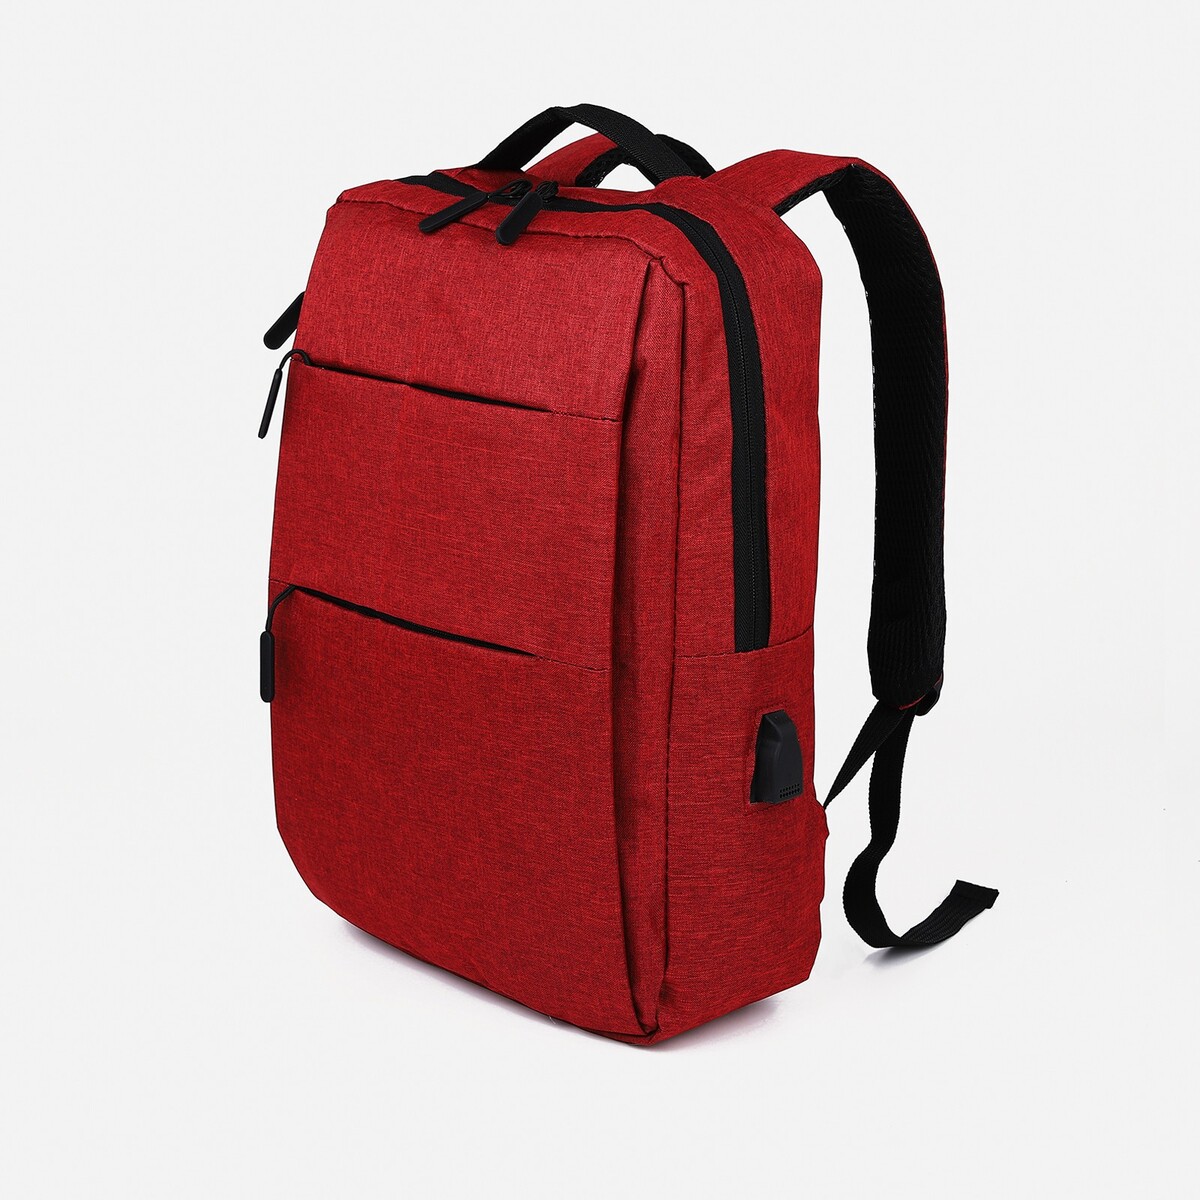 Рюкзак мужской на молнии, 4 наружных кармана, с usb, цвет бордовый pixel bag рюкзак с led дисплеем pixel plus red line бордовый